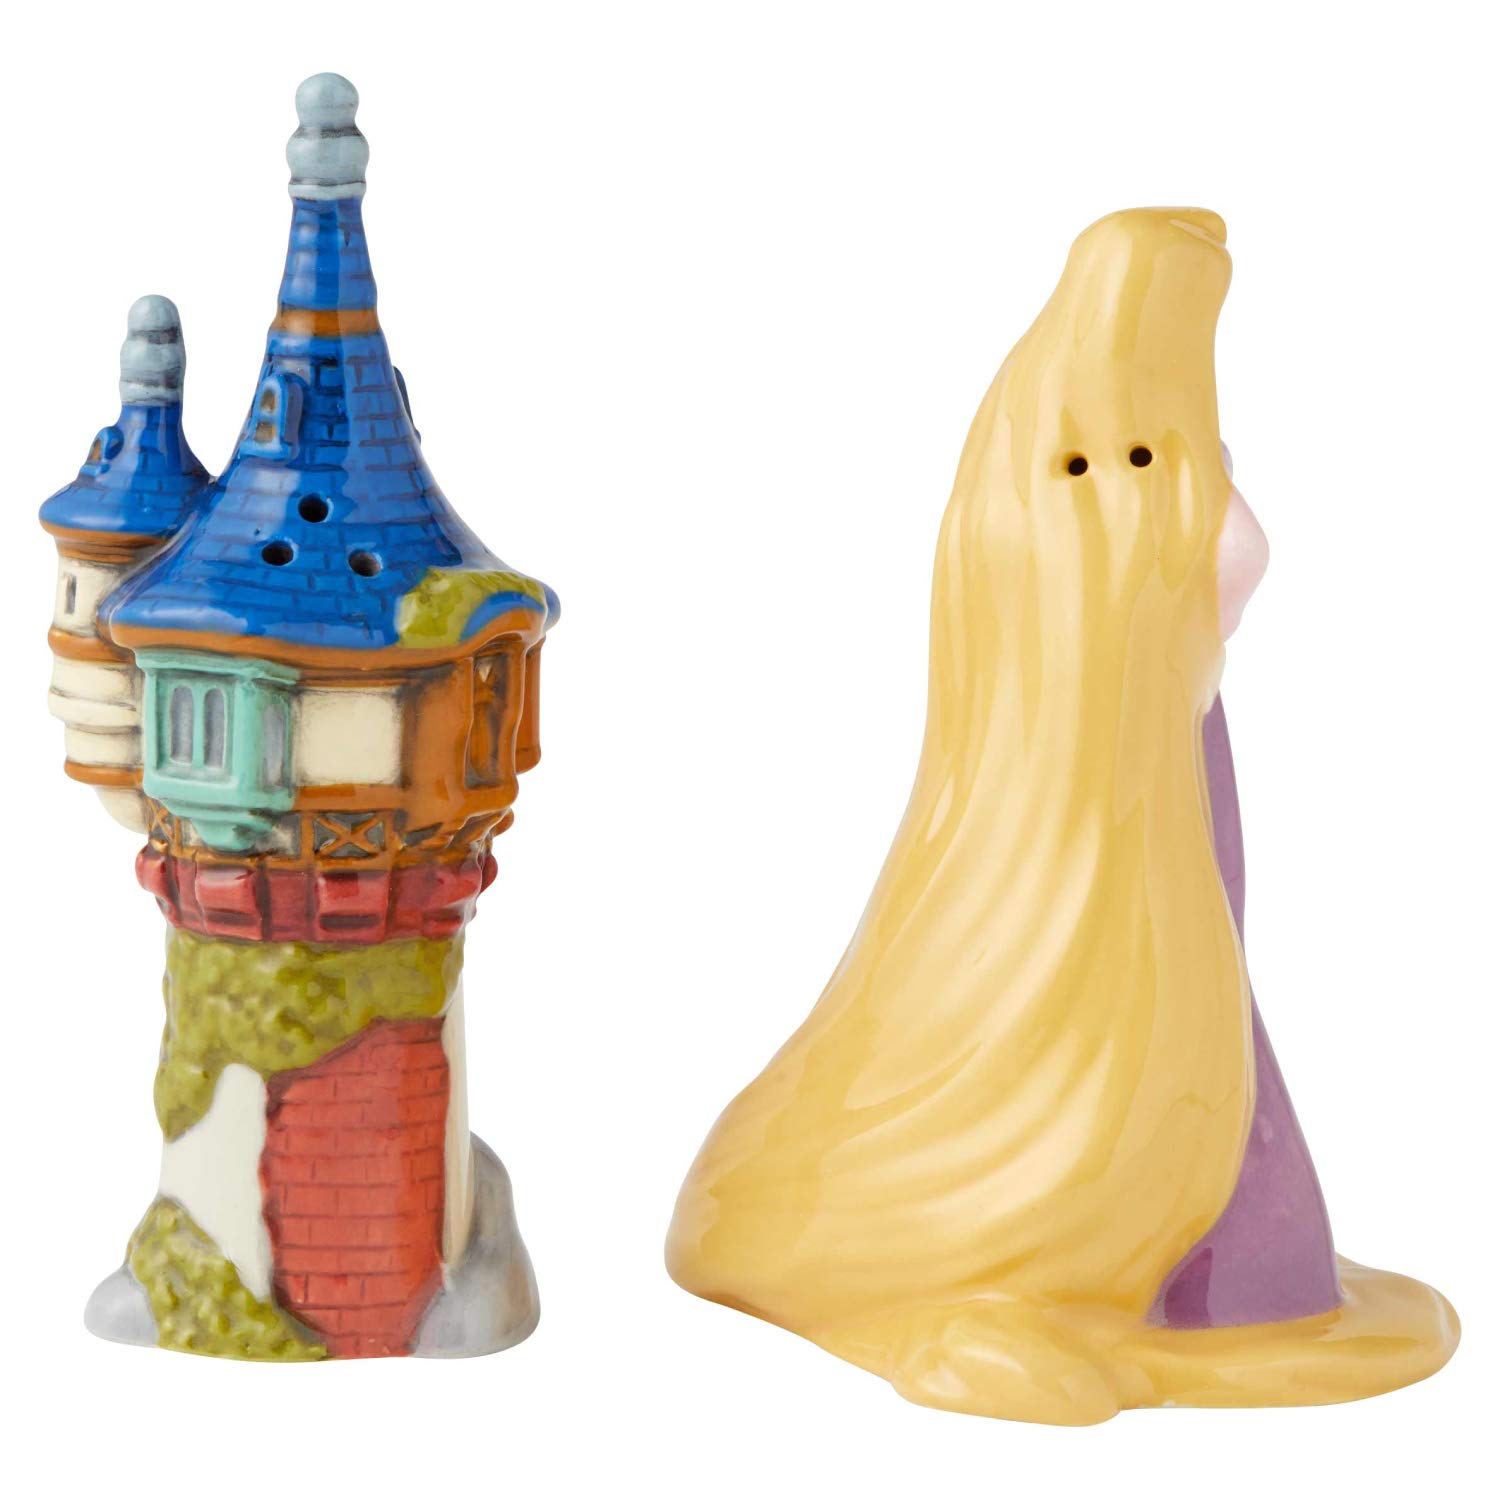 Rapunzel and Tower Salt & Pepper Shaker Set - image 2 of 2